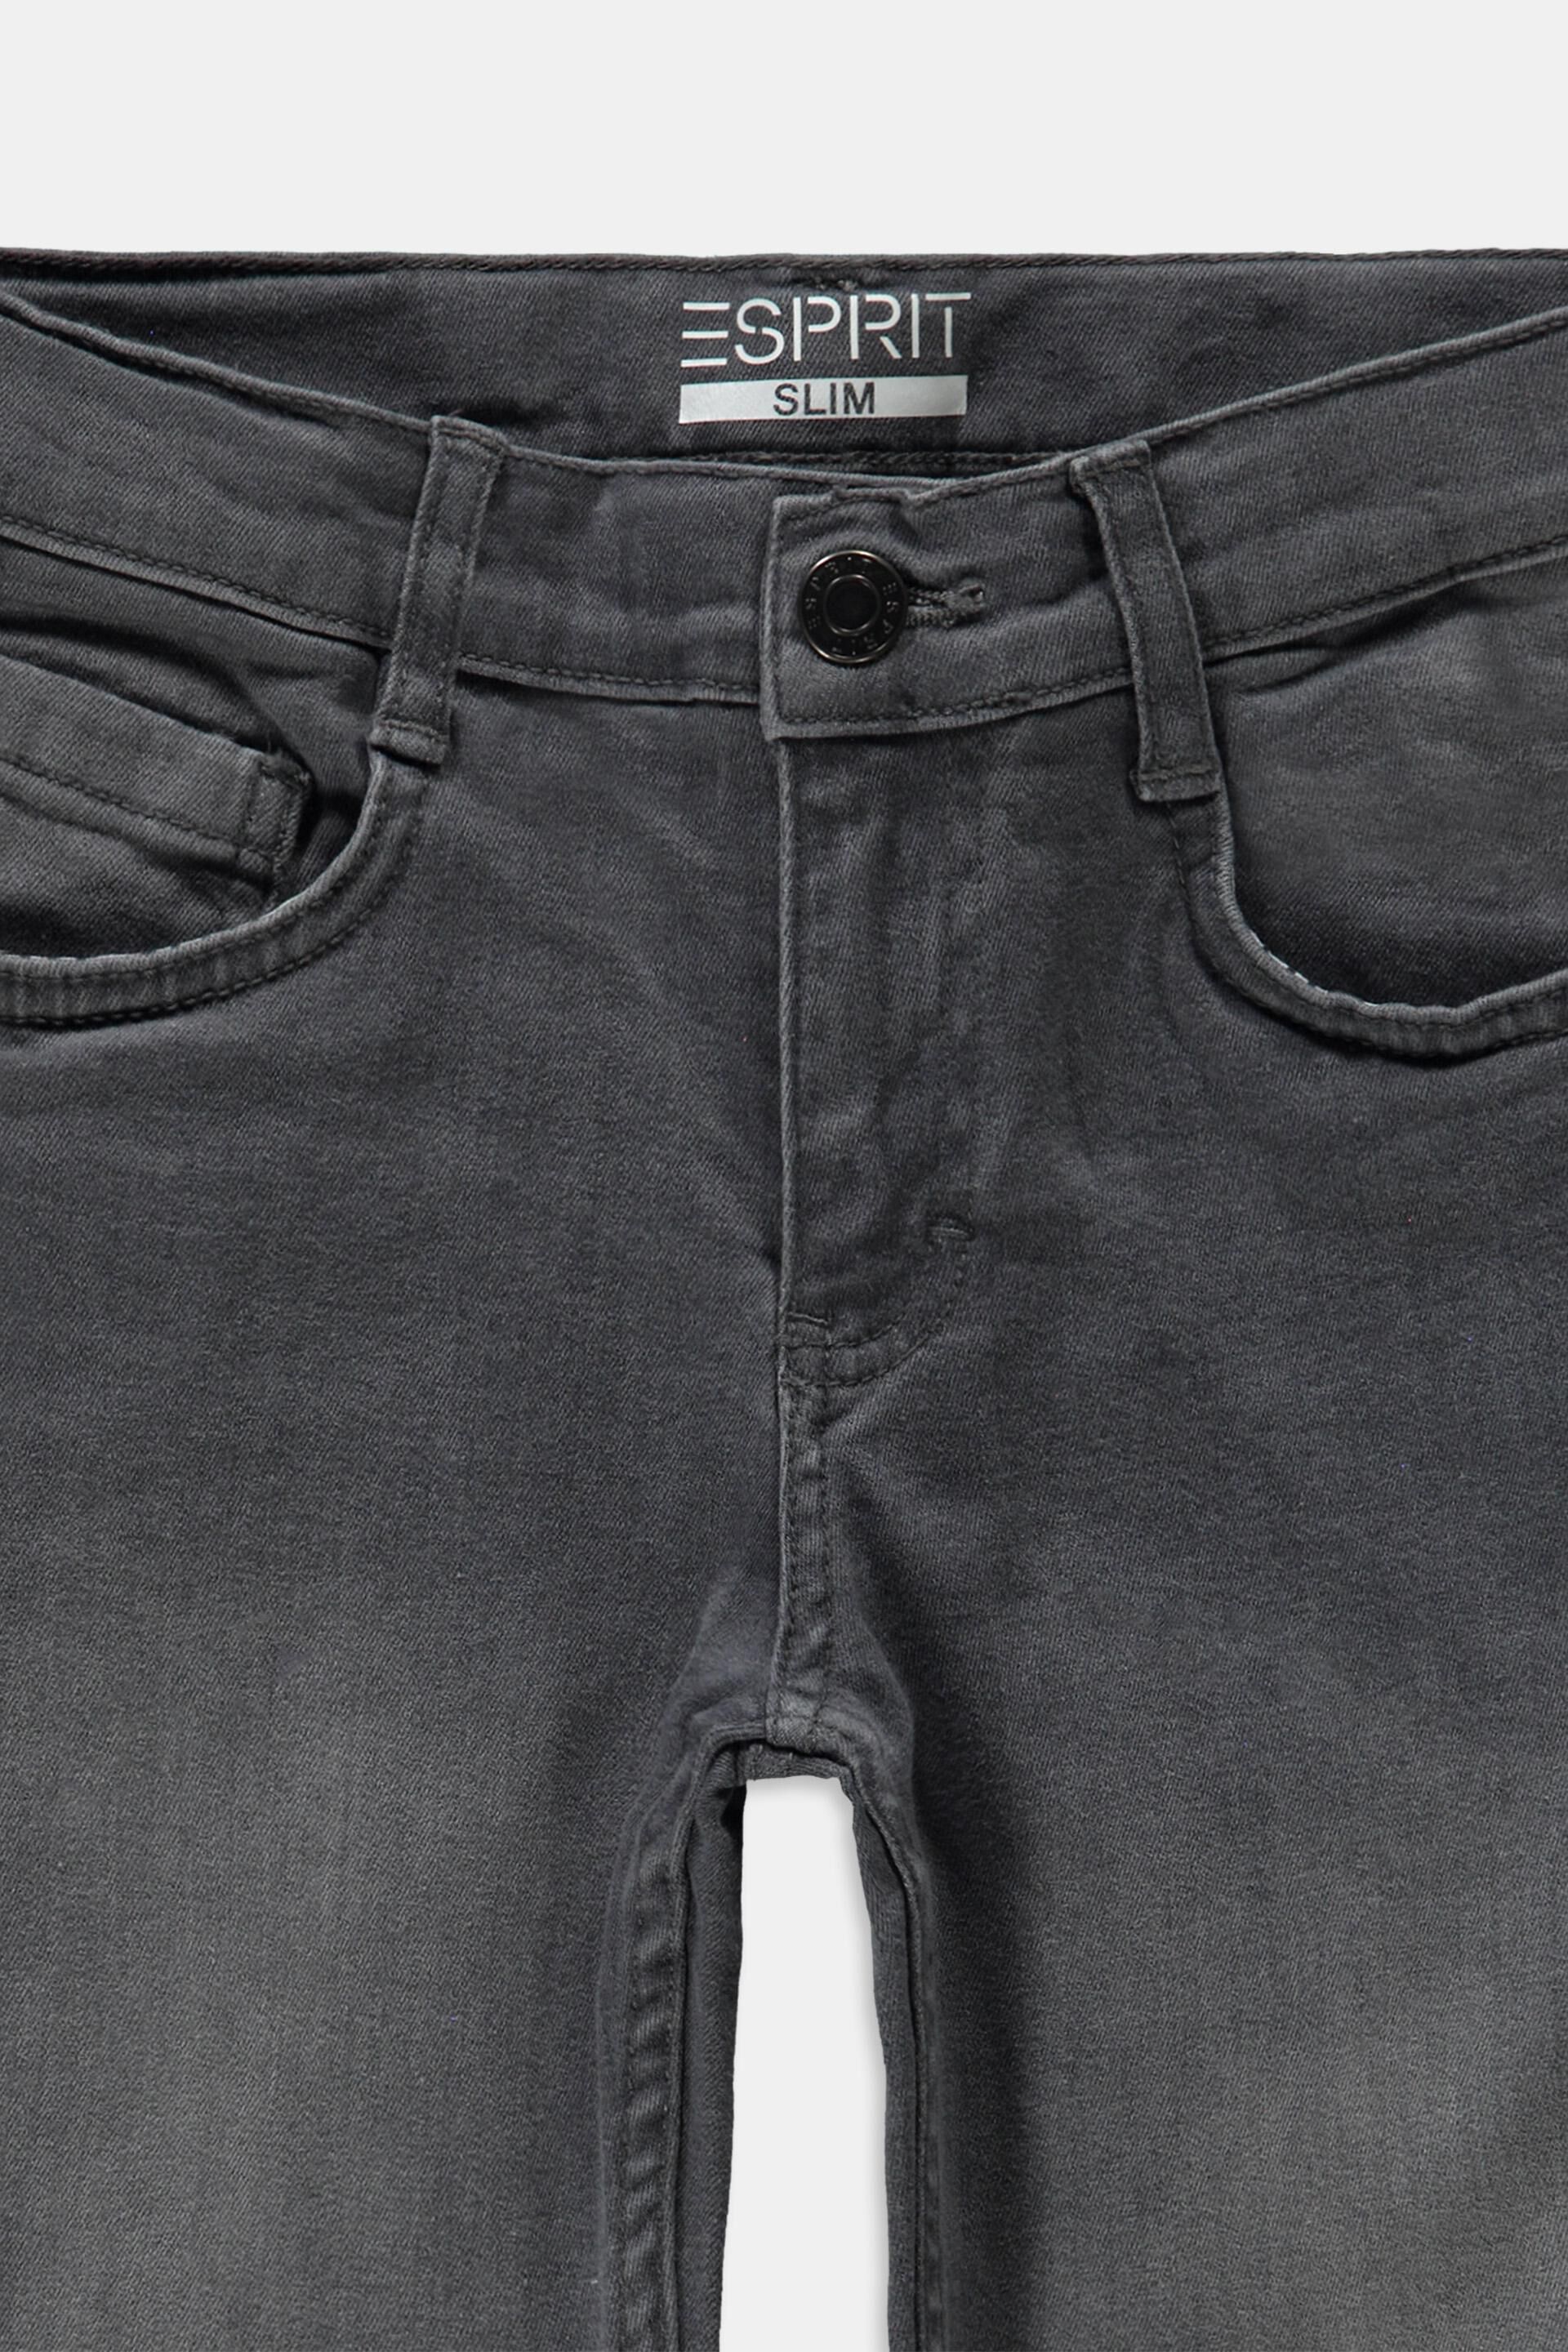 Jungen Bekleidung Hosen Jeans DE 176 Levis Jungen Jeans Gr 